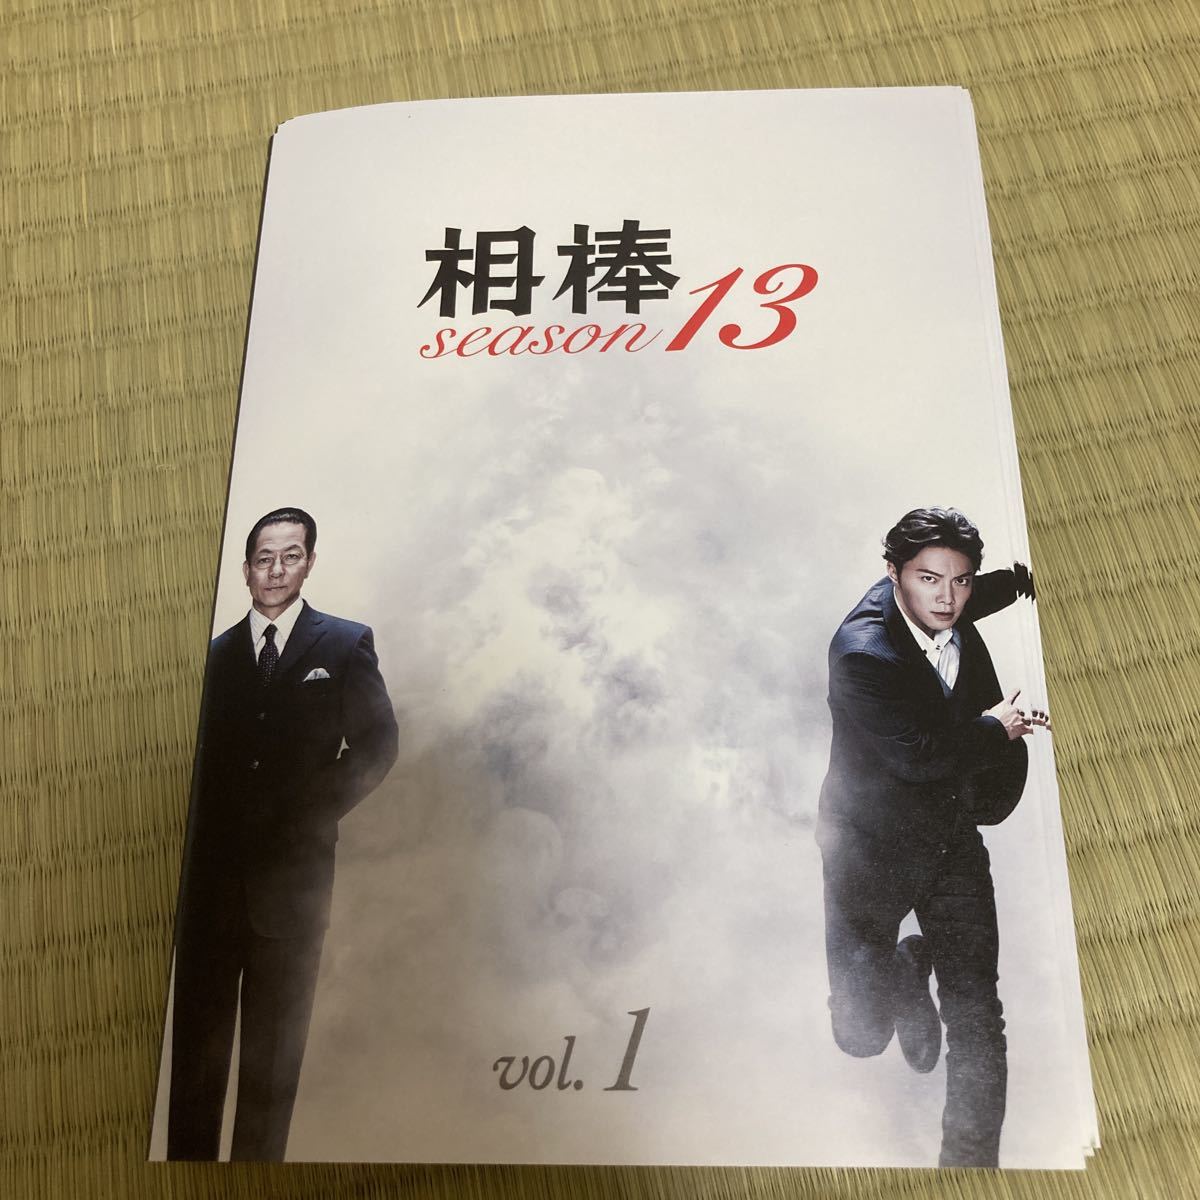 きれい 相棒 season シーズン 13 [レンタル落ち] 全11巻セット DVD